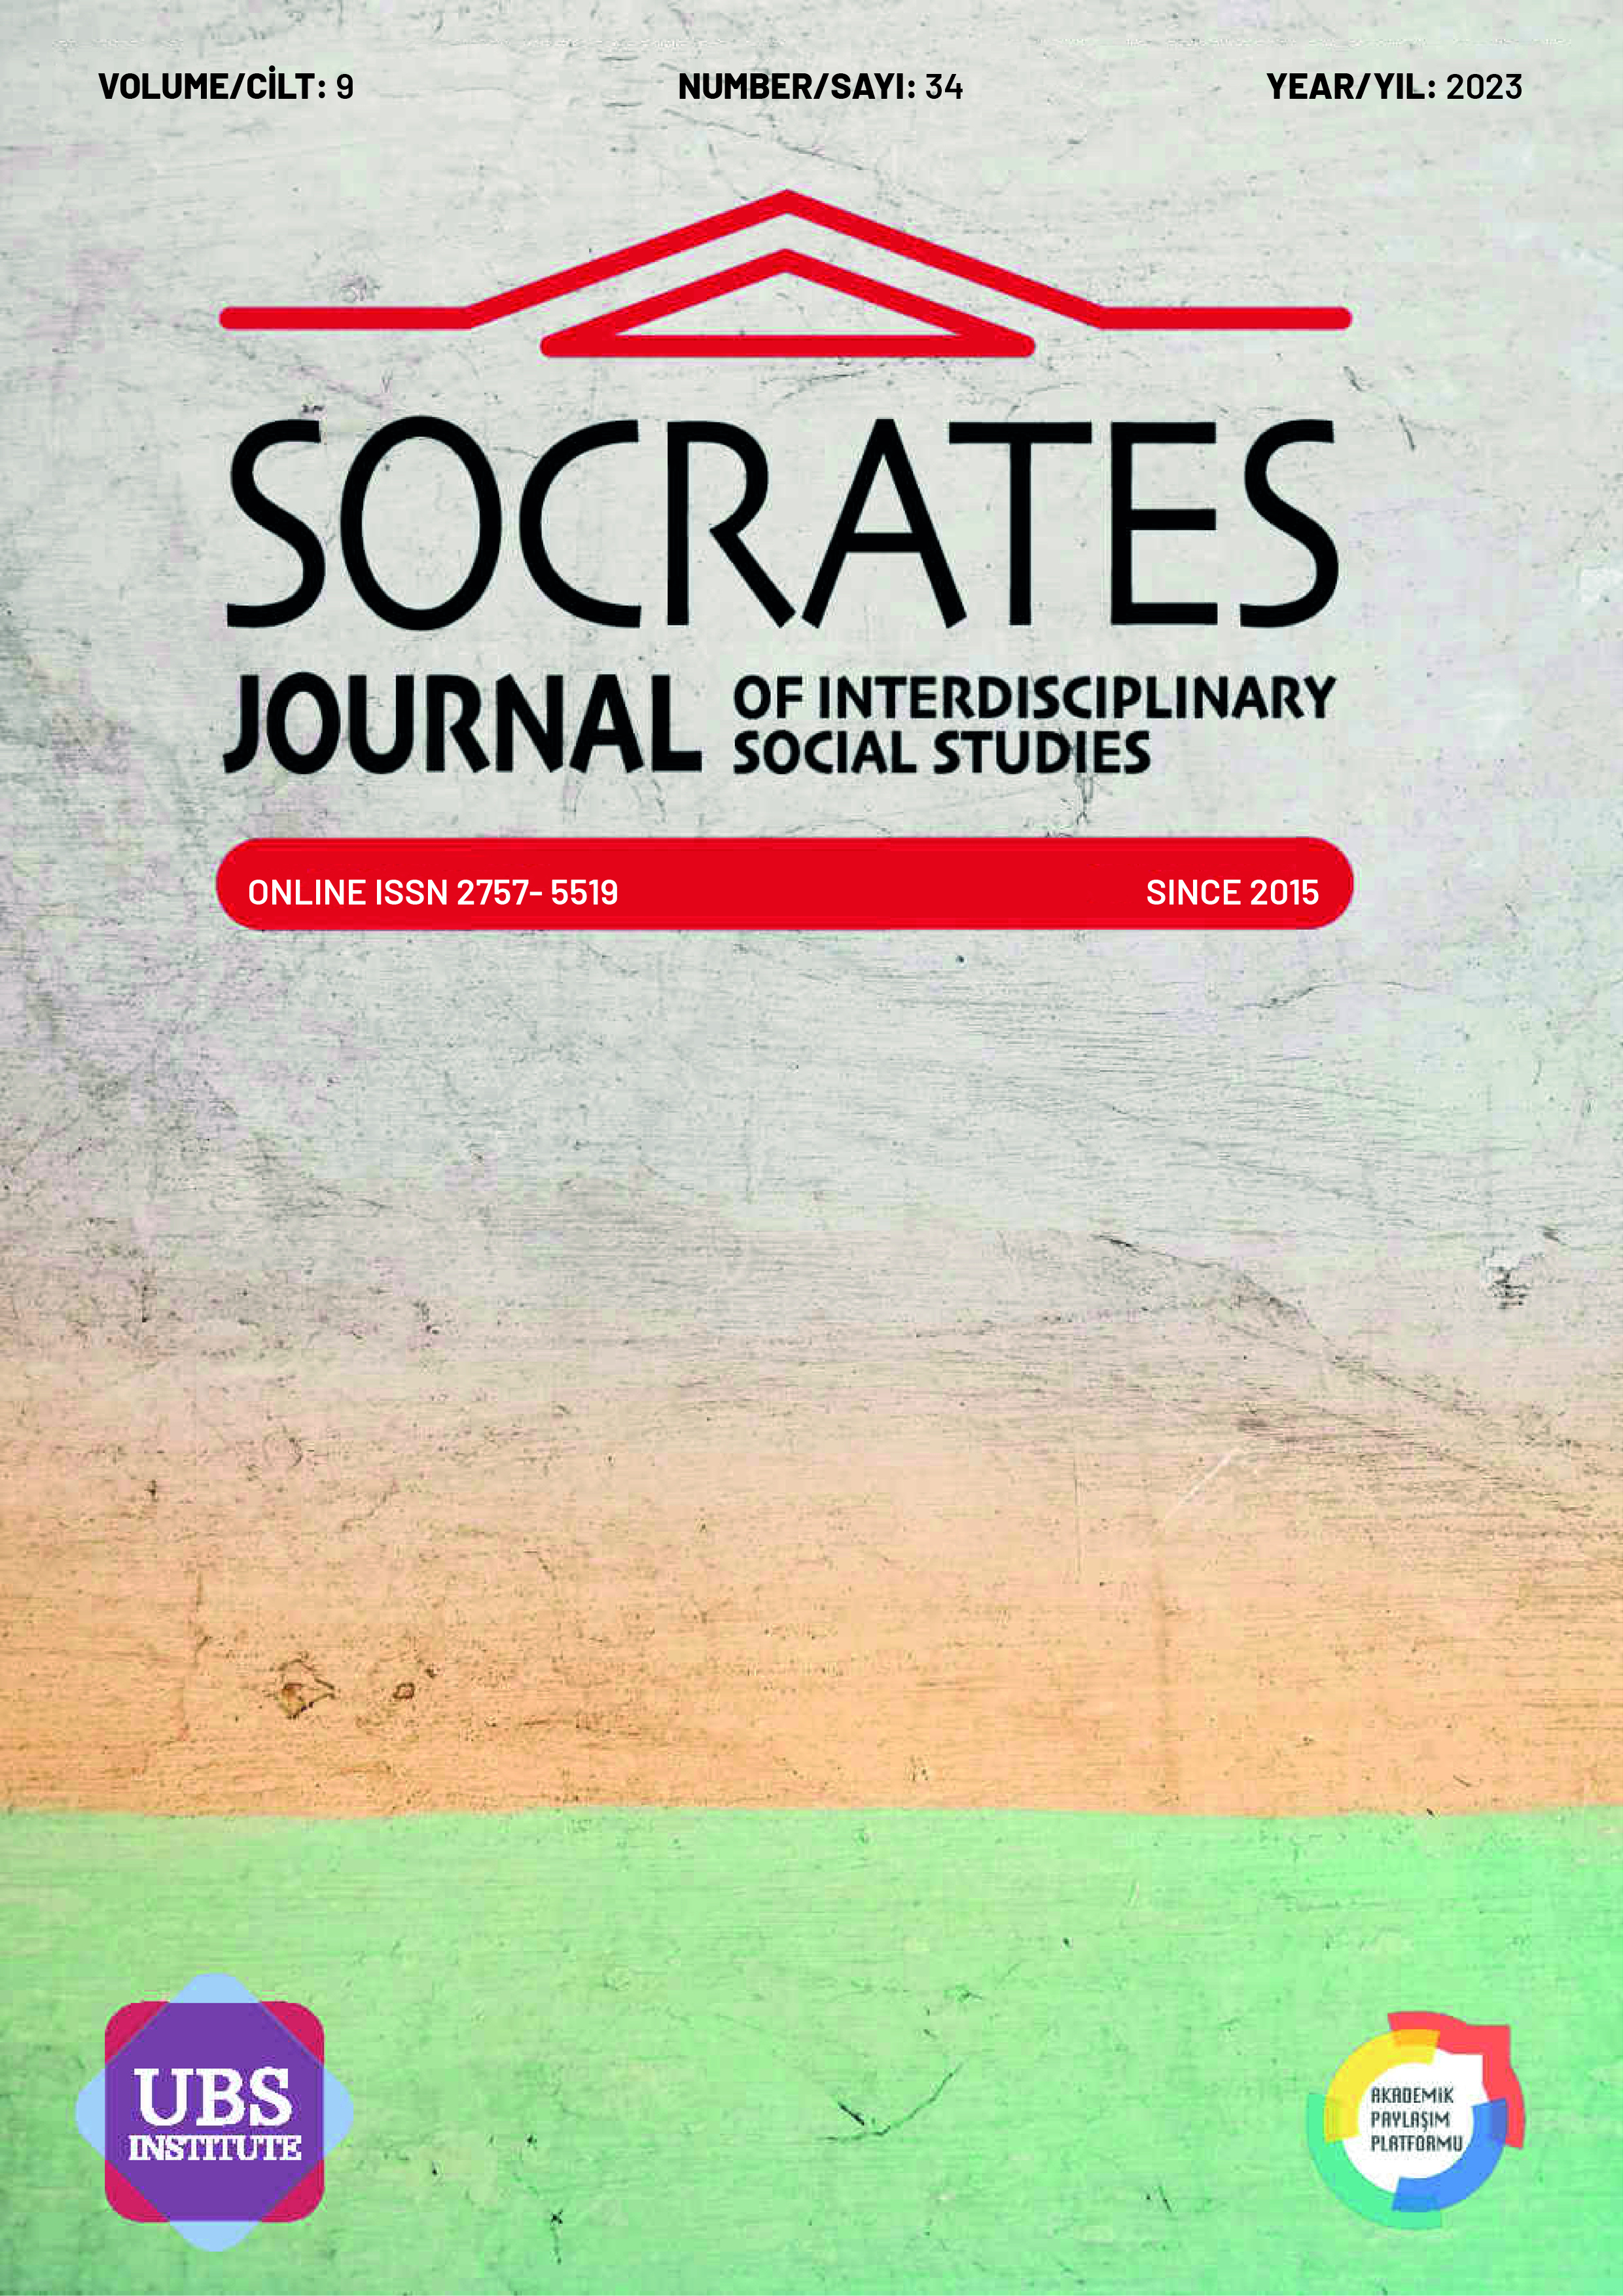 					Cilt 9 Sayı 34 (2023): SOCRATES JOURNAL OF INTERDISCIPLINARY SOCIAL STUDIES Gör
				